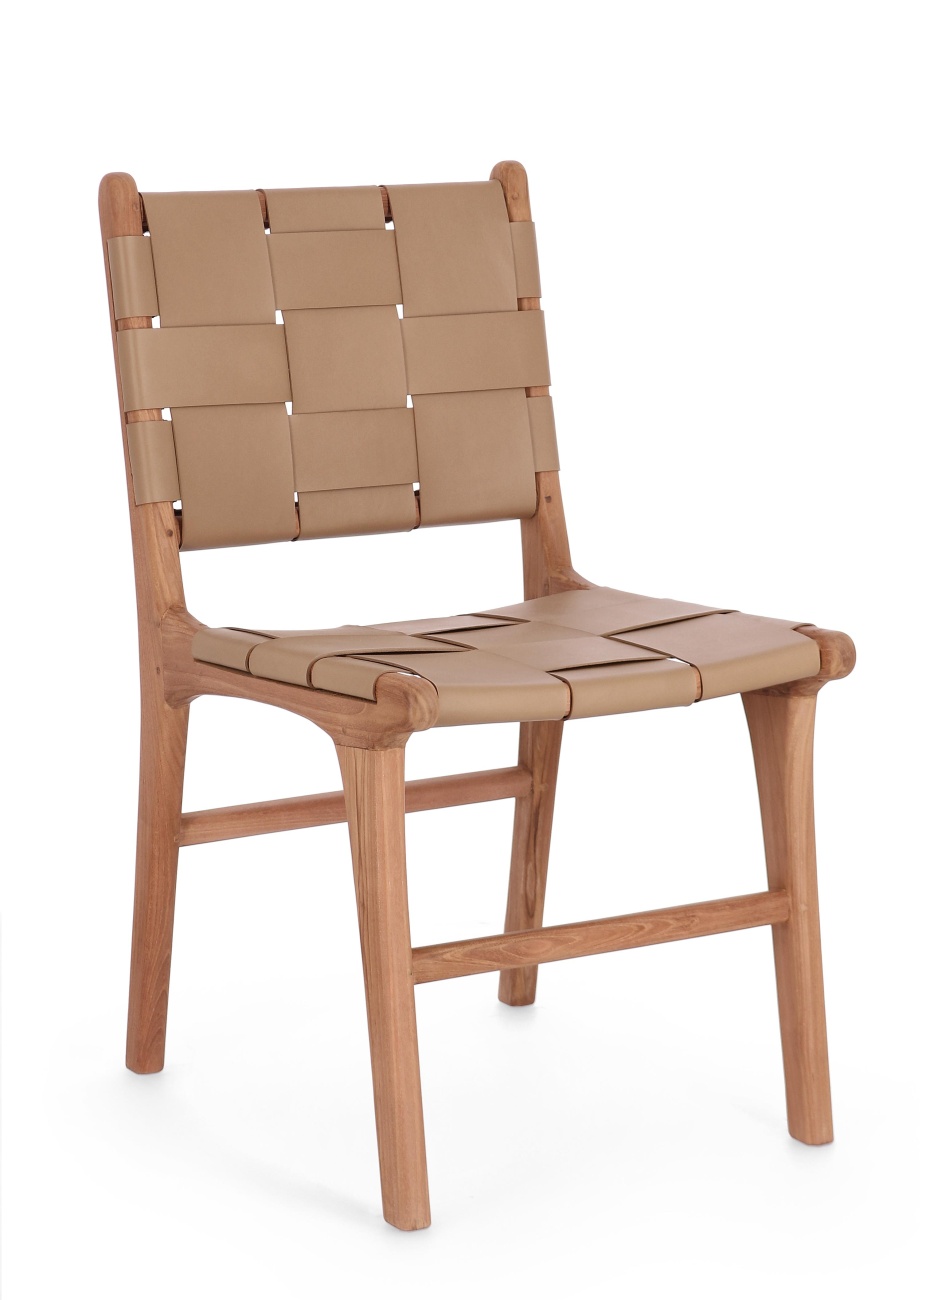 Der Esszimmerstuhl Joanna überzeugt mit seinem modernen Stil. Gefertigt wurde er aus Leder, welches einen Taupe Farbton besitzt. Das Gestell ist aus Teakholz und hat eine natürliche Farbe. Der Stuhl besitzt eine Sitzhöhe von 45 cm.